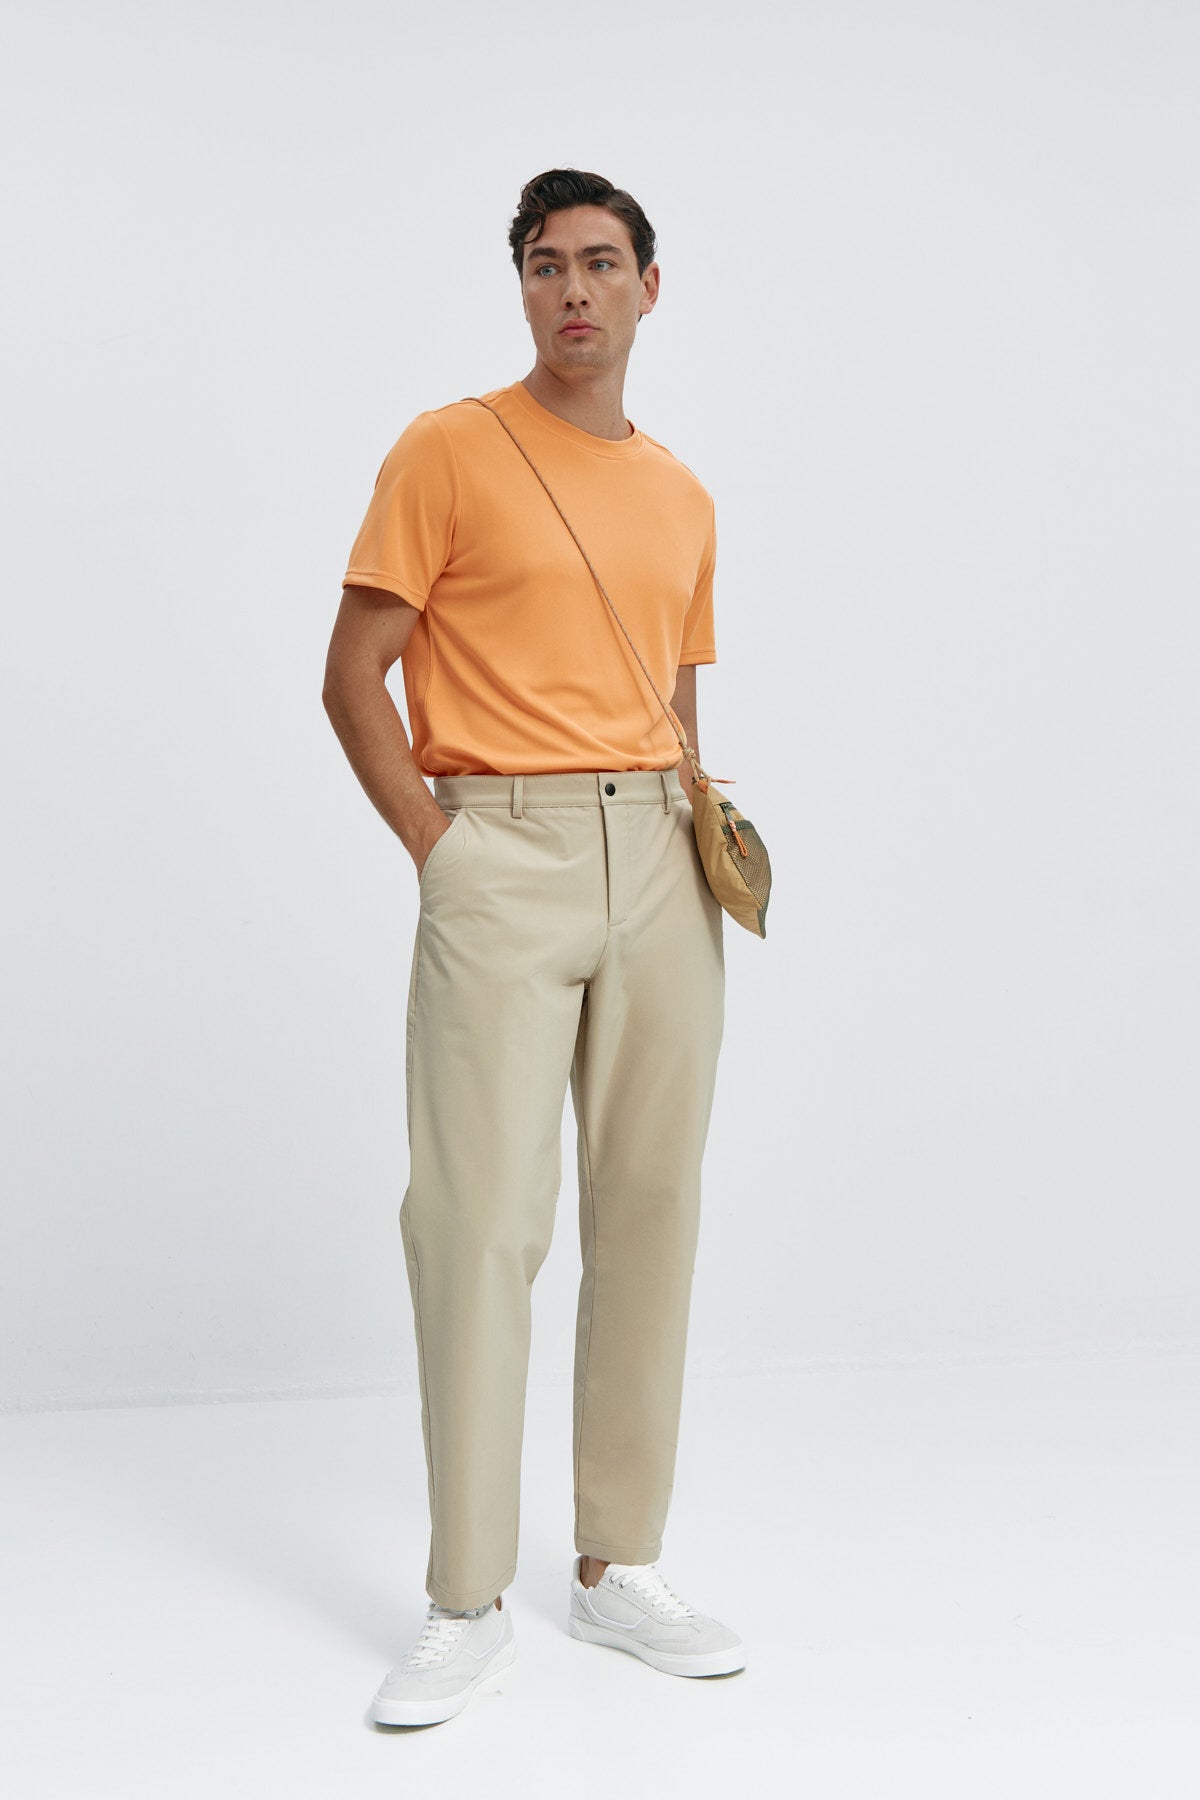 Camiseta de hombre en naranja calatea de Sepiia, fresca y estilosa. Foto cuerpo entero